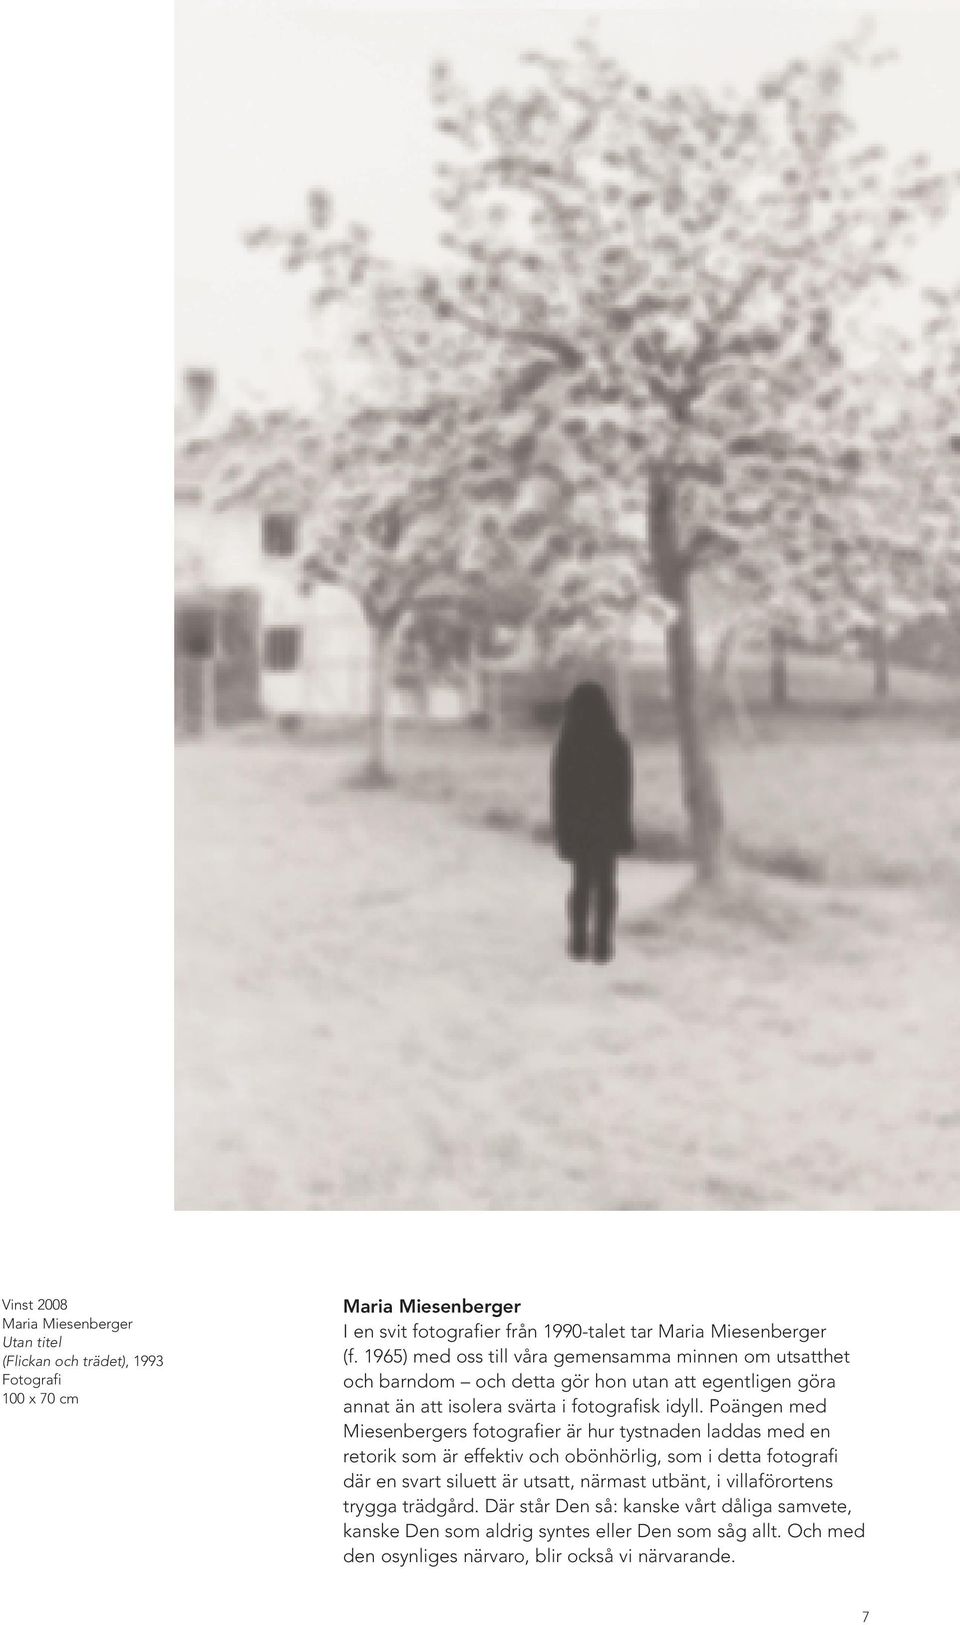 Poängen med Miesenbergers fotografier är hur tystnaden laddas med en retorik som är effektiv och obönhörlig, som i detta fotografi där en svart siluett är utsatt, närmast